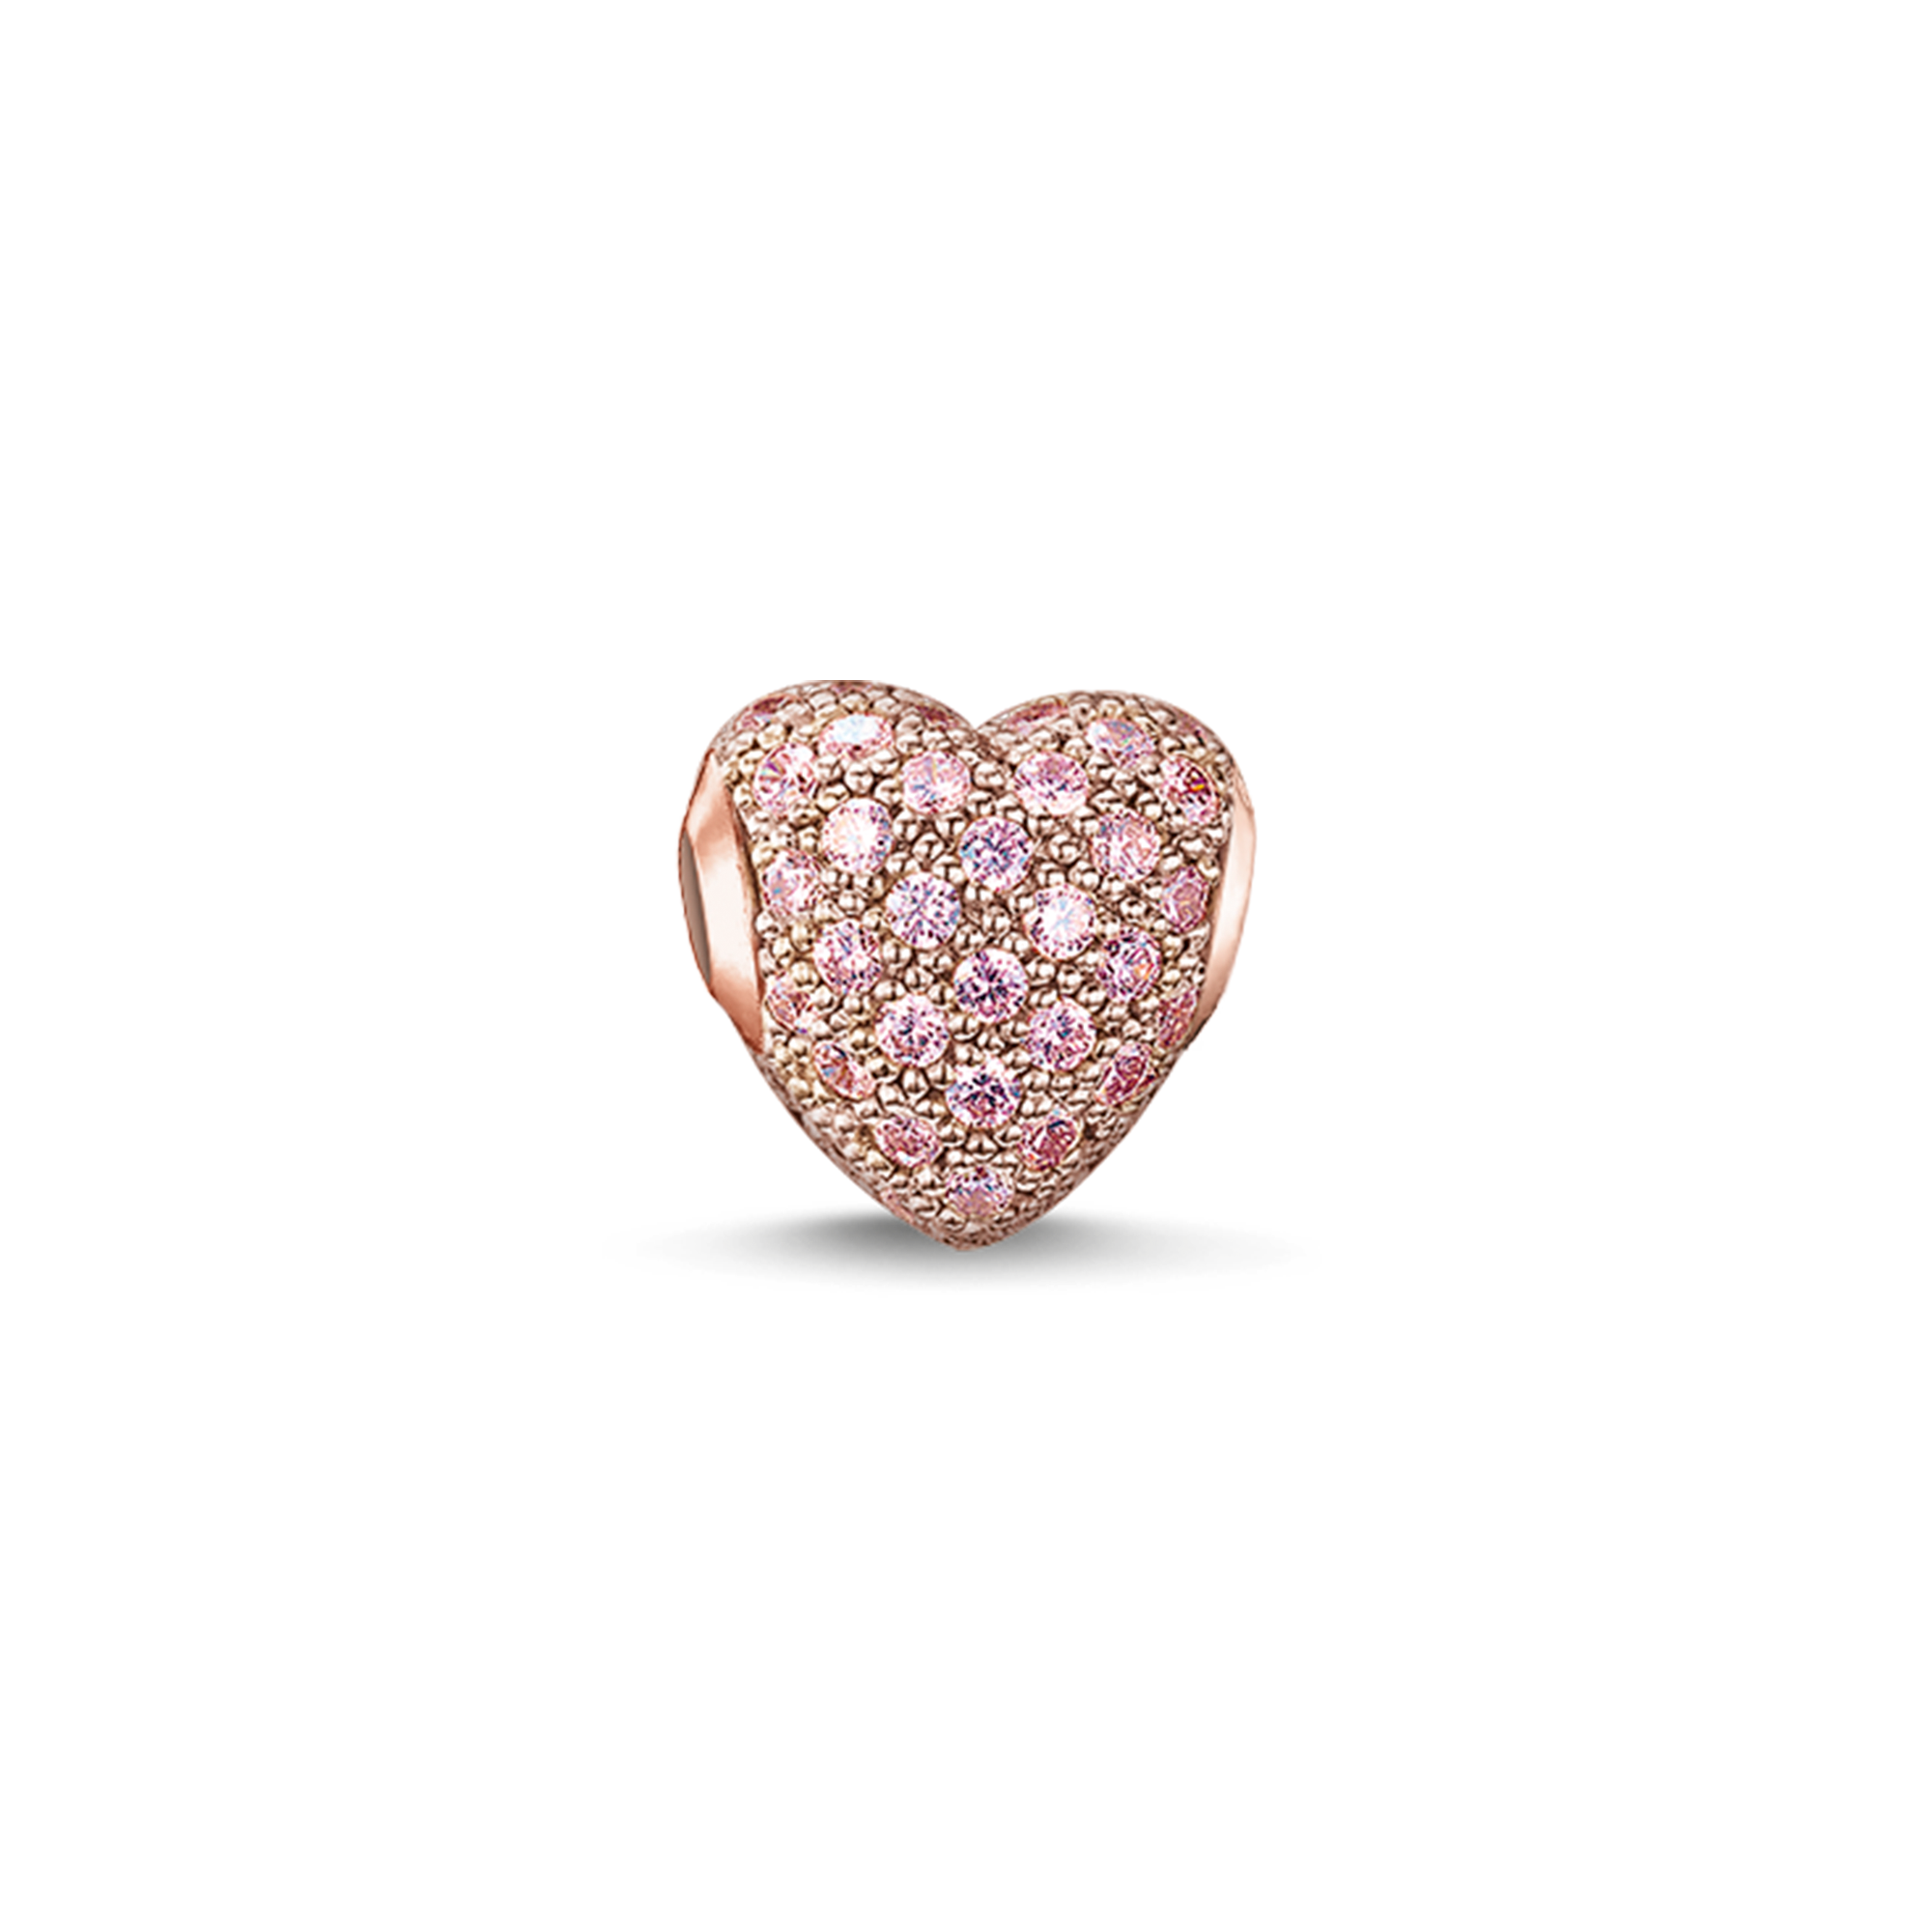 Das Herz in aufregendem Pink symbolisiert die Spannung einer neuen Liebe. Bitte beachten Sie: Dieser Bead ist nicht mit dem folgenden Artikel kombinierbar: KH0001 - 0